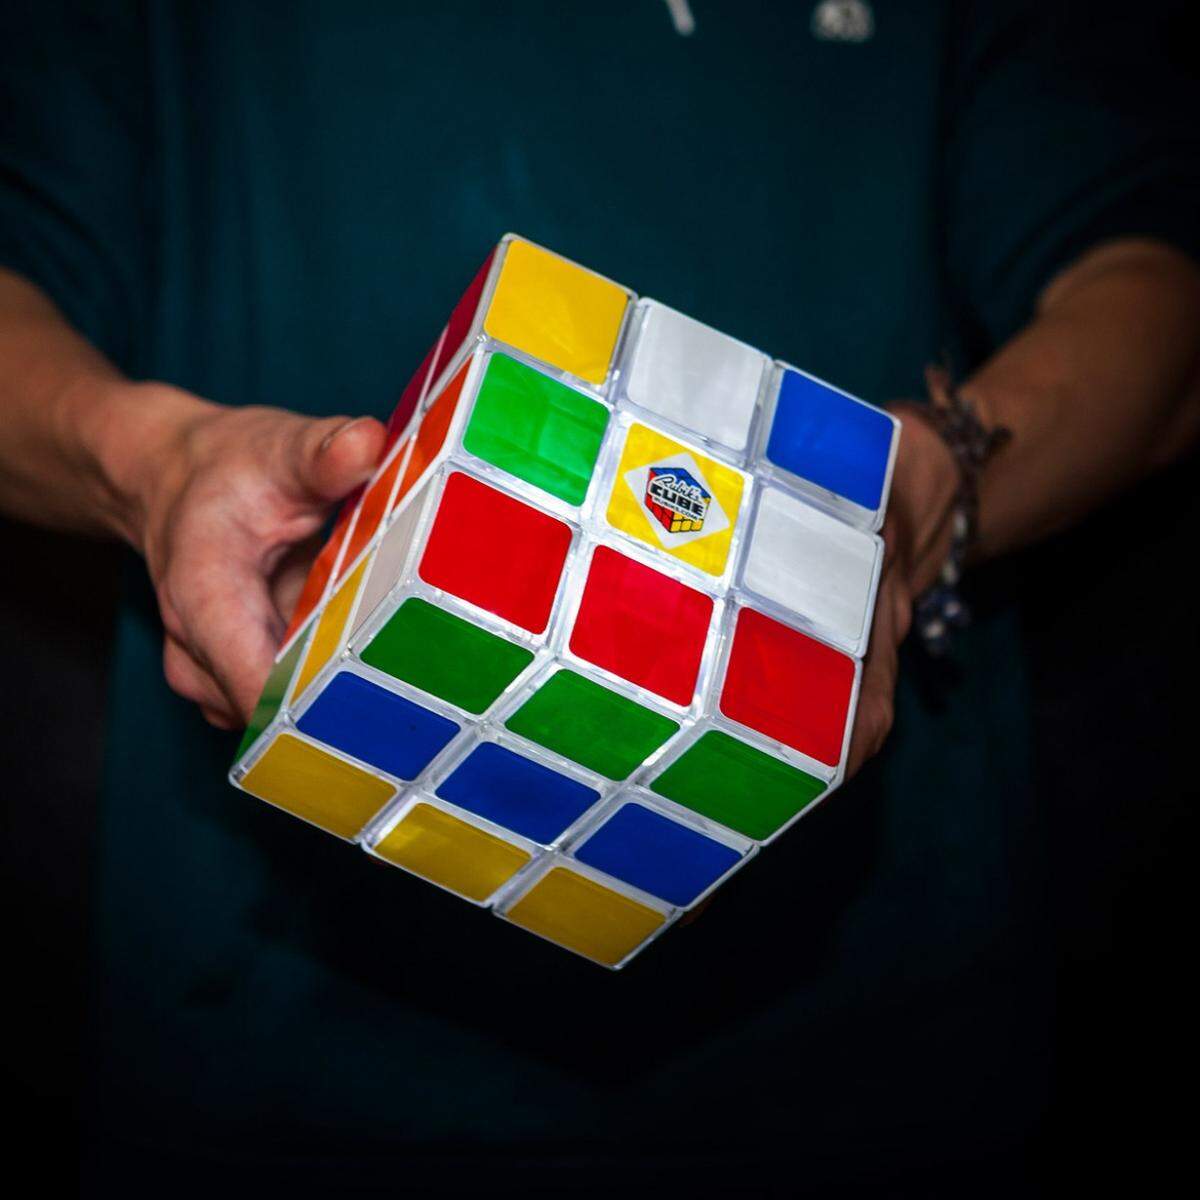 Er kommt einfach nicht aus der Mode. Und das ist auch gut so. Der von dem ungarischen Ingenieur Ernö Rubik entwickelte Würfel feiert immer wieder Renaissance. Dieses Mal in Form einer Lampe, die sich via USB aufladen lässt und damit auch kabellos funktioniert. Und gedreht und gerätselt darf auch werden - aber nicht Schummeln.